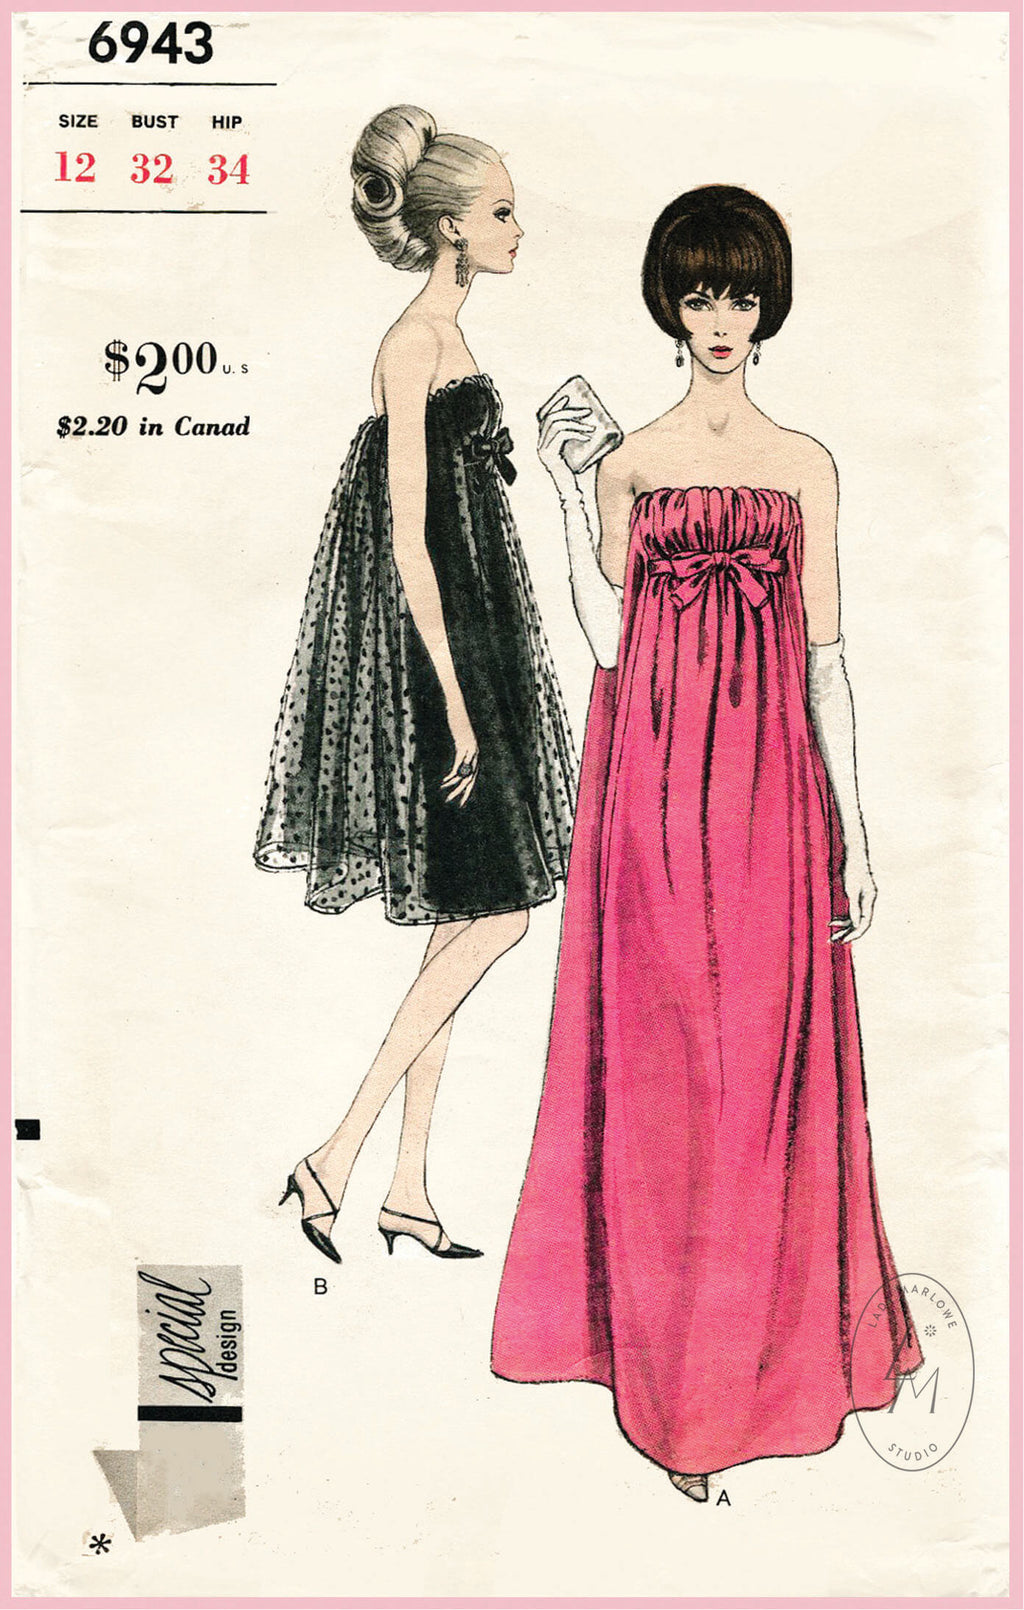 1960s formal wear